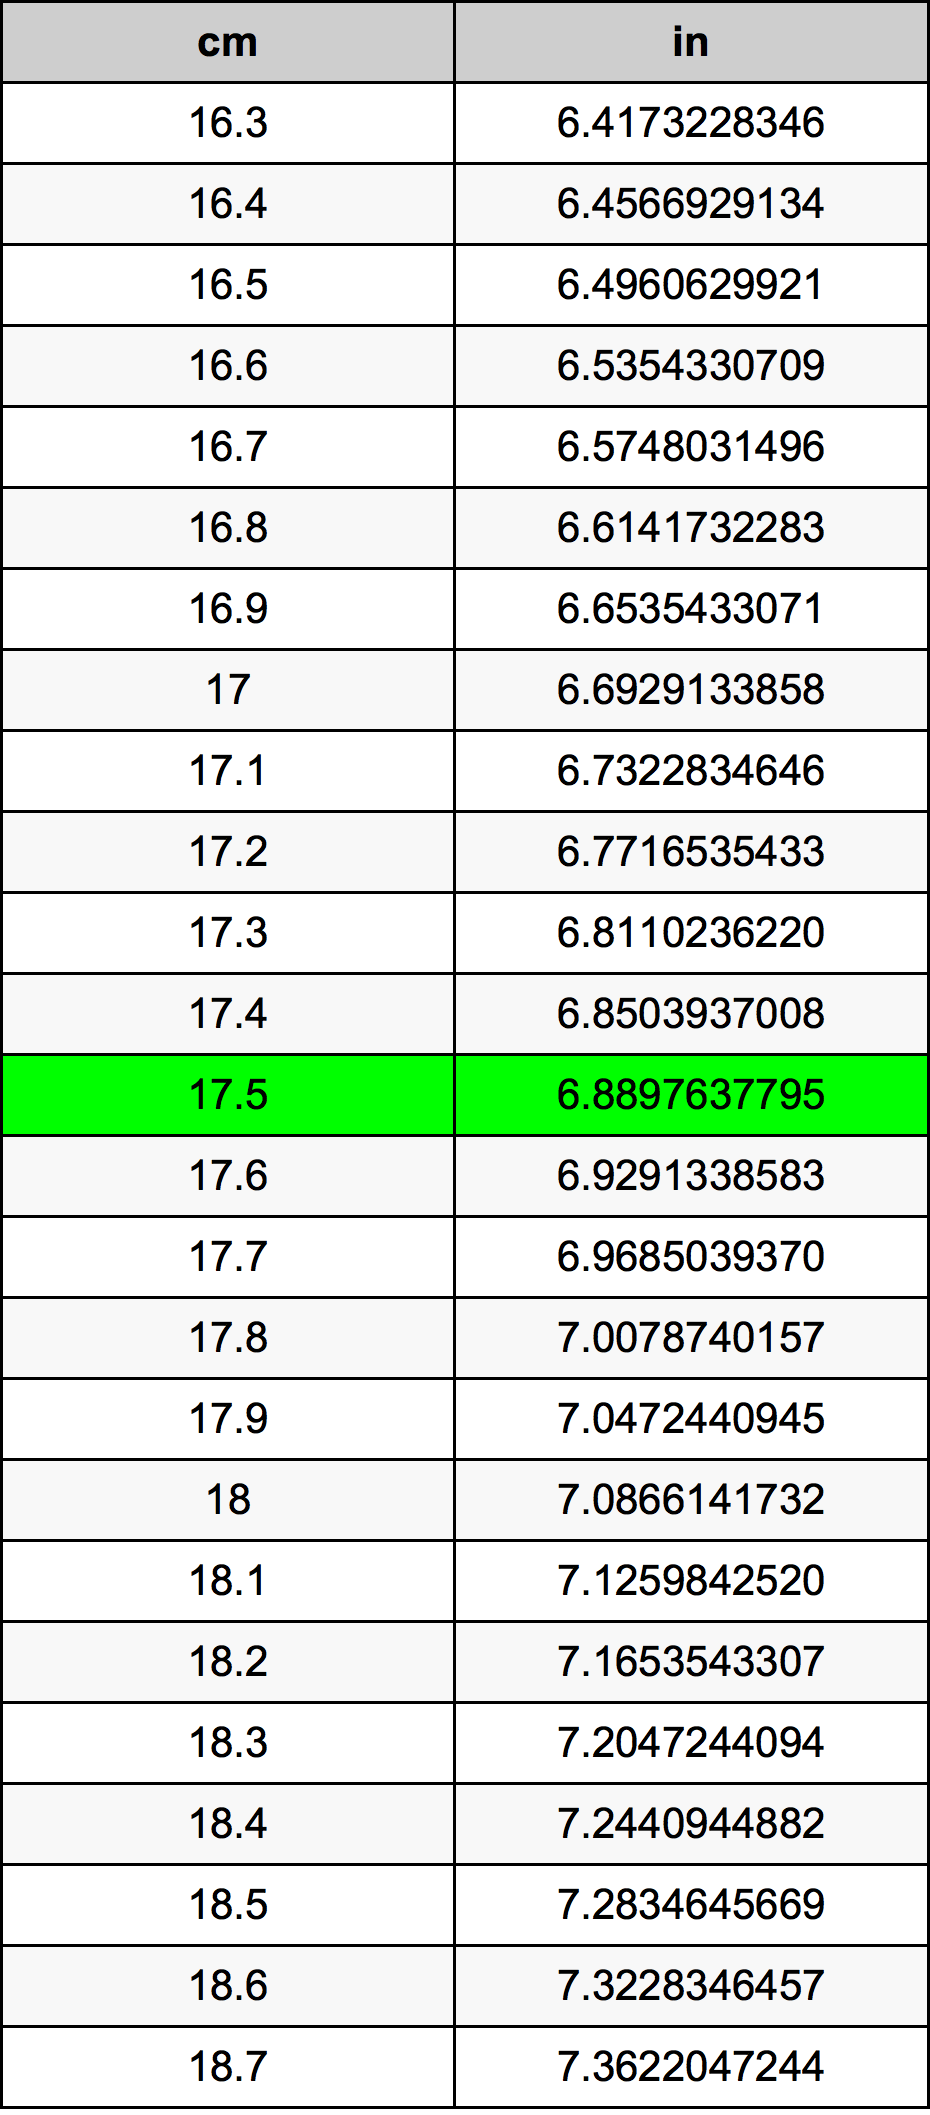 17.5 Centiméter átszámítási táblázat